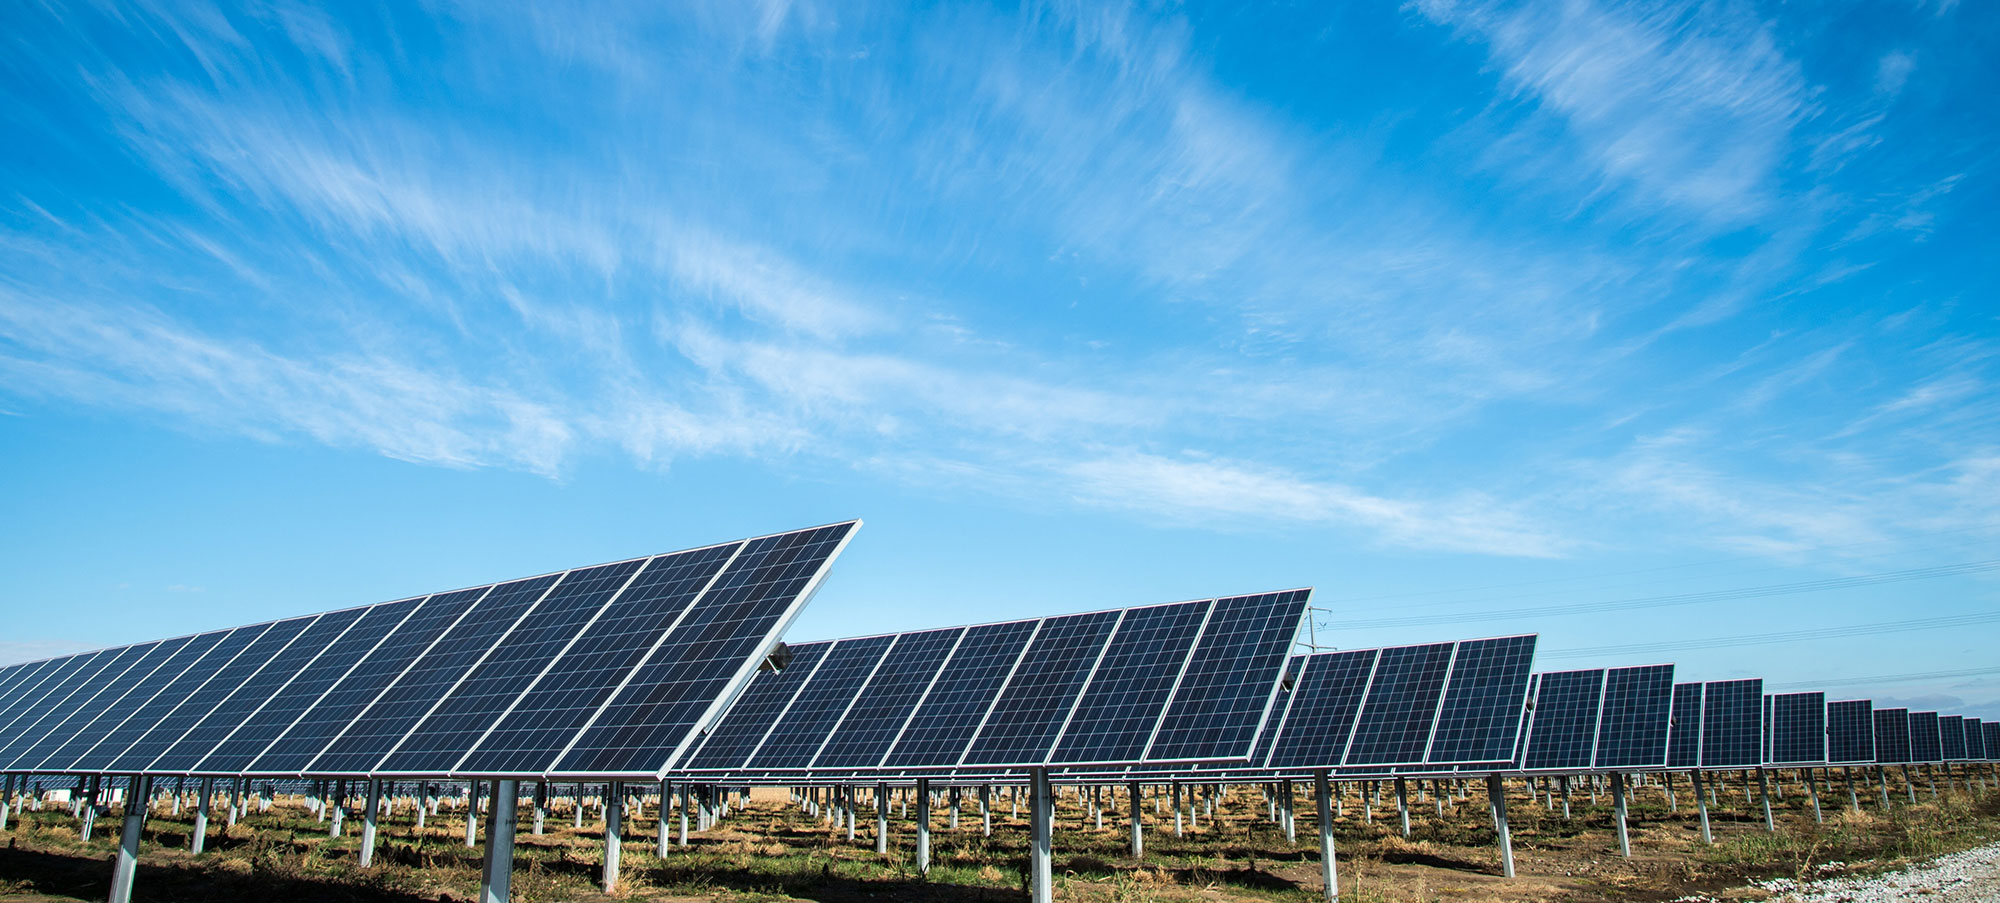 Rioma, empresa líder Instal·lacions solars fotovoltaiques